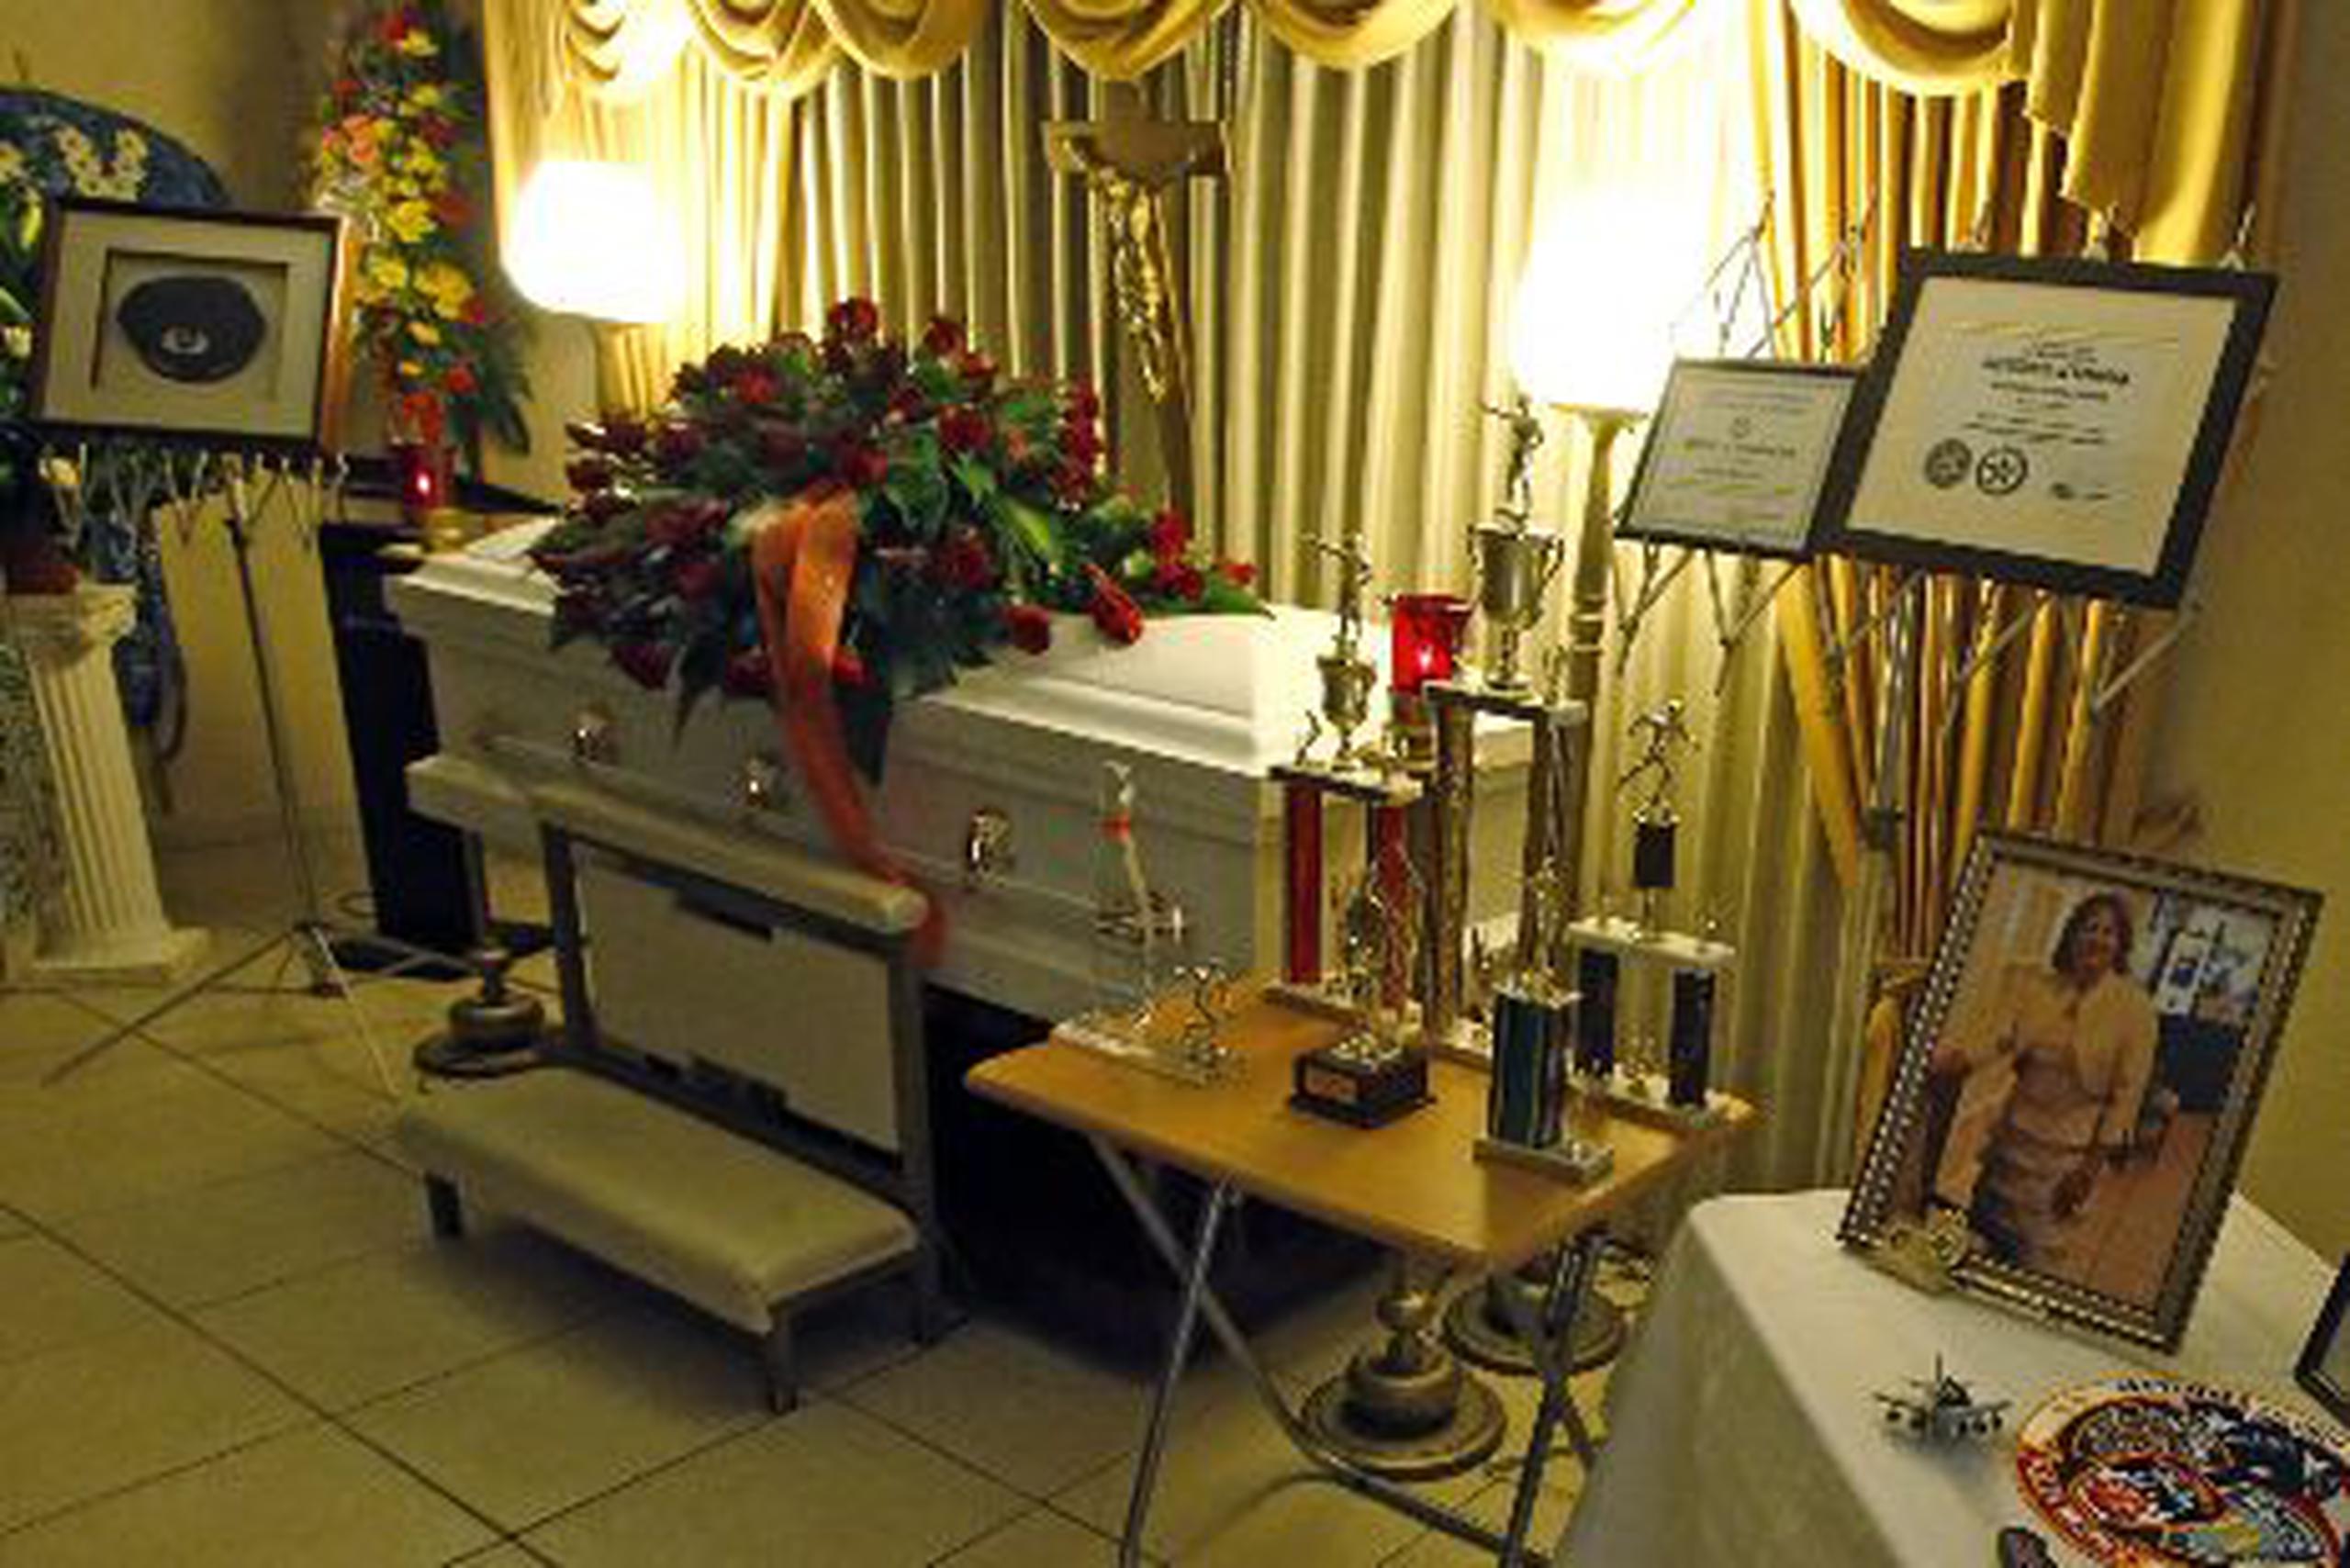  Ayer se expuso, en la funeraria  Campo Rico Memorial, en Carolina, el féretro con los restos de la agente Mayra Ramírez Barreto (en el recuadro).&nbsp;<font color="yellow">(lino.prieto@gfrmedia.com)</font>